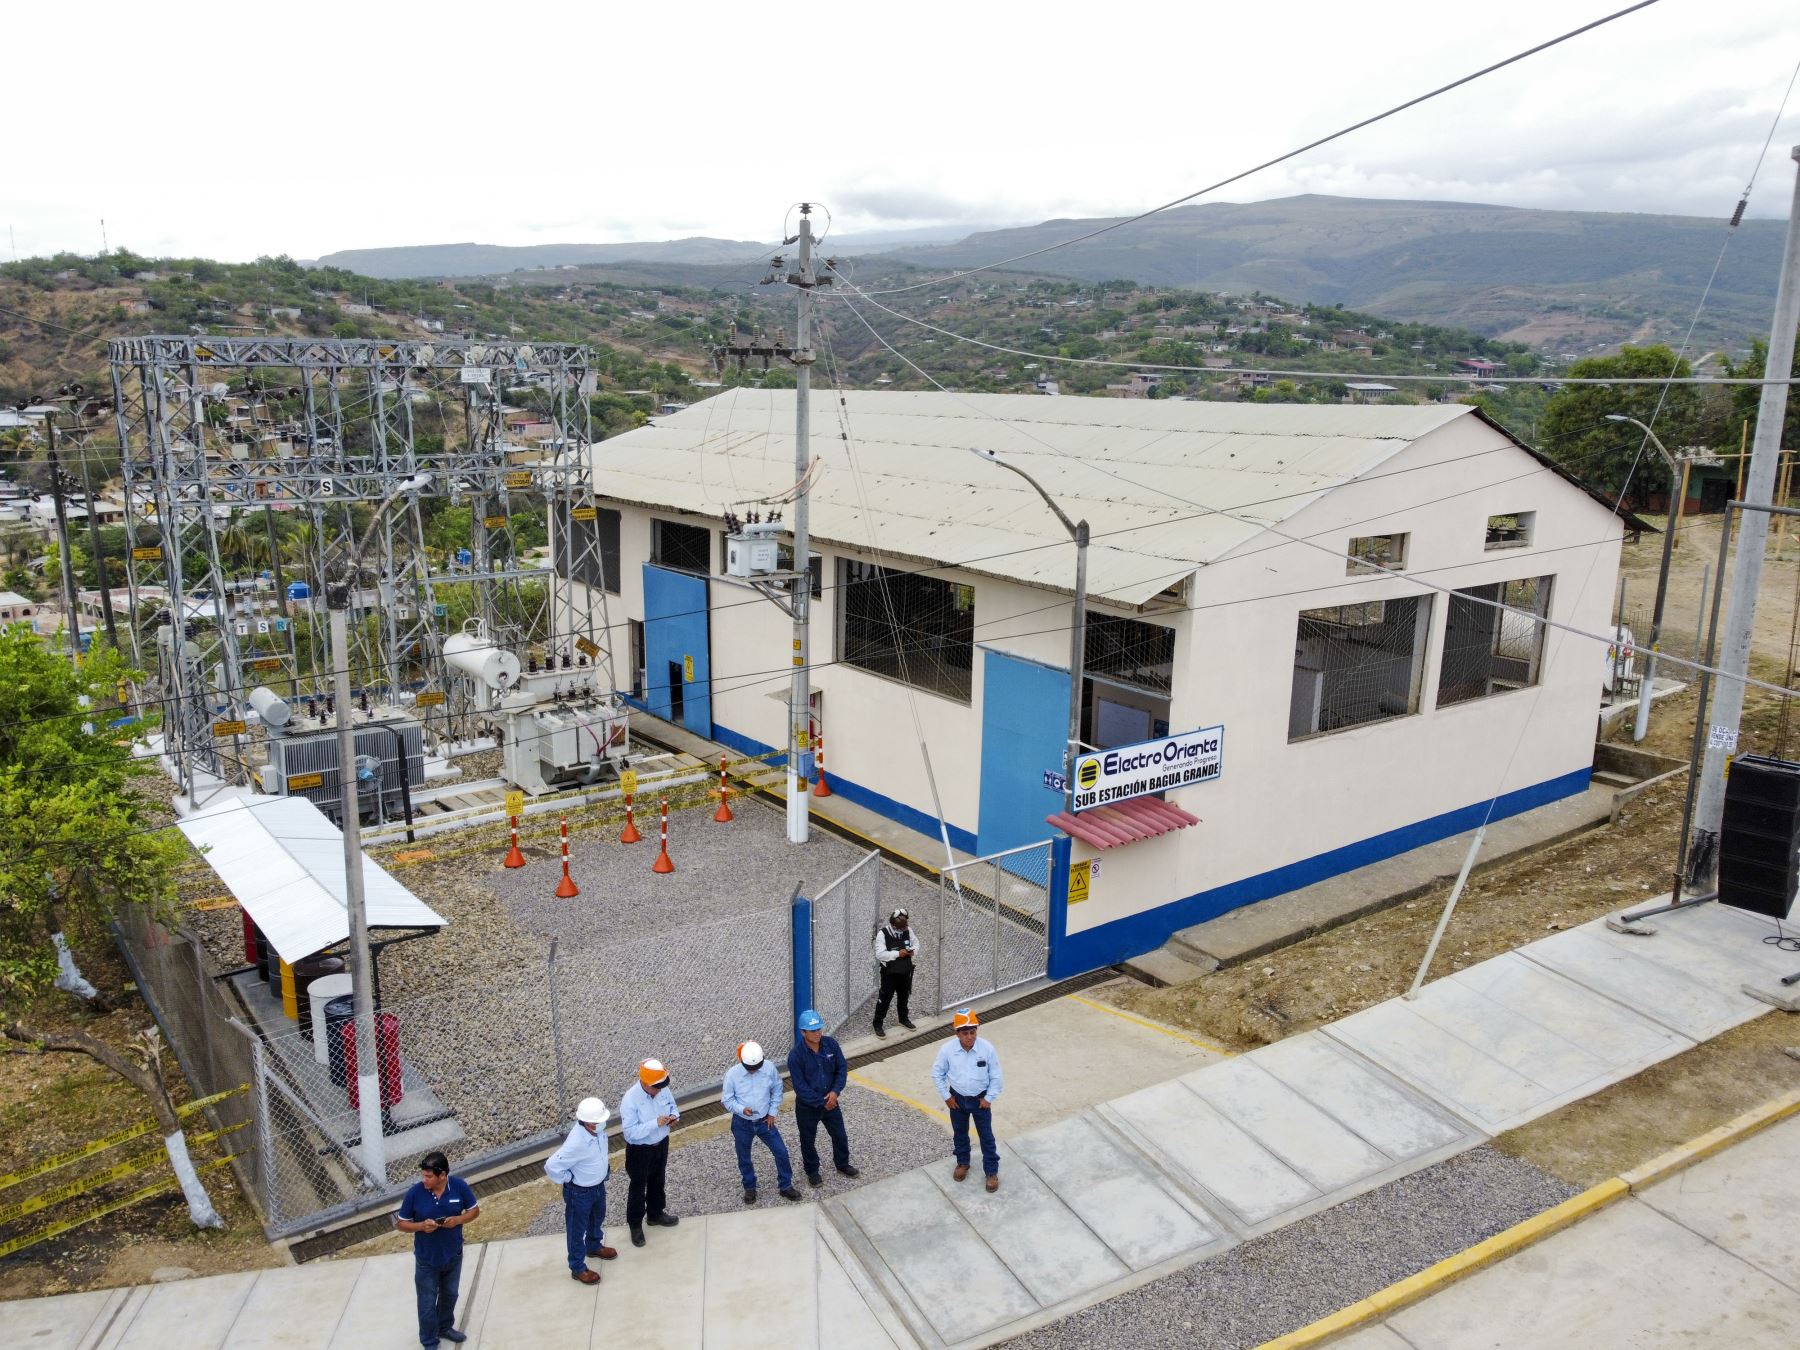 El presidente de la República, Pedro Castillo Terrones, inauguró 3 proyectos de electrificación que permitirán cerrar brechas de acceso a la energía eléctrica para beneficio de más de 120,000 habitantes de las provincias de Utcubamba, Chachapoyas, Bongará (Amazonas) y Jaén (Cajamarca). Foto: ANDINA/ Prensa Presidencia